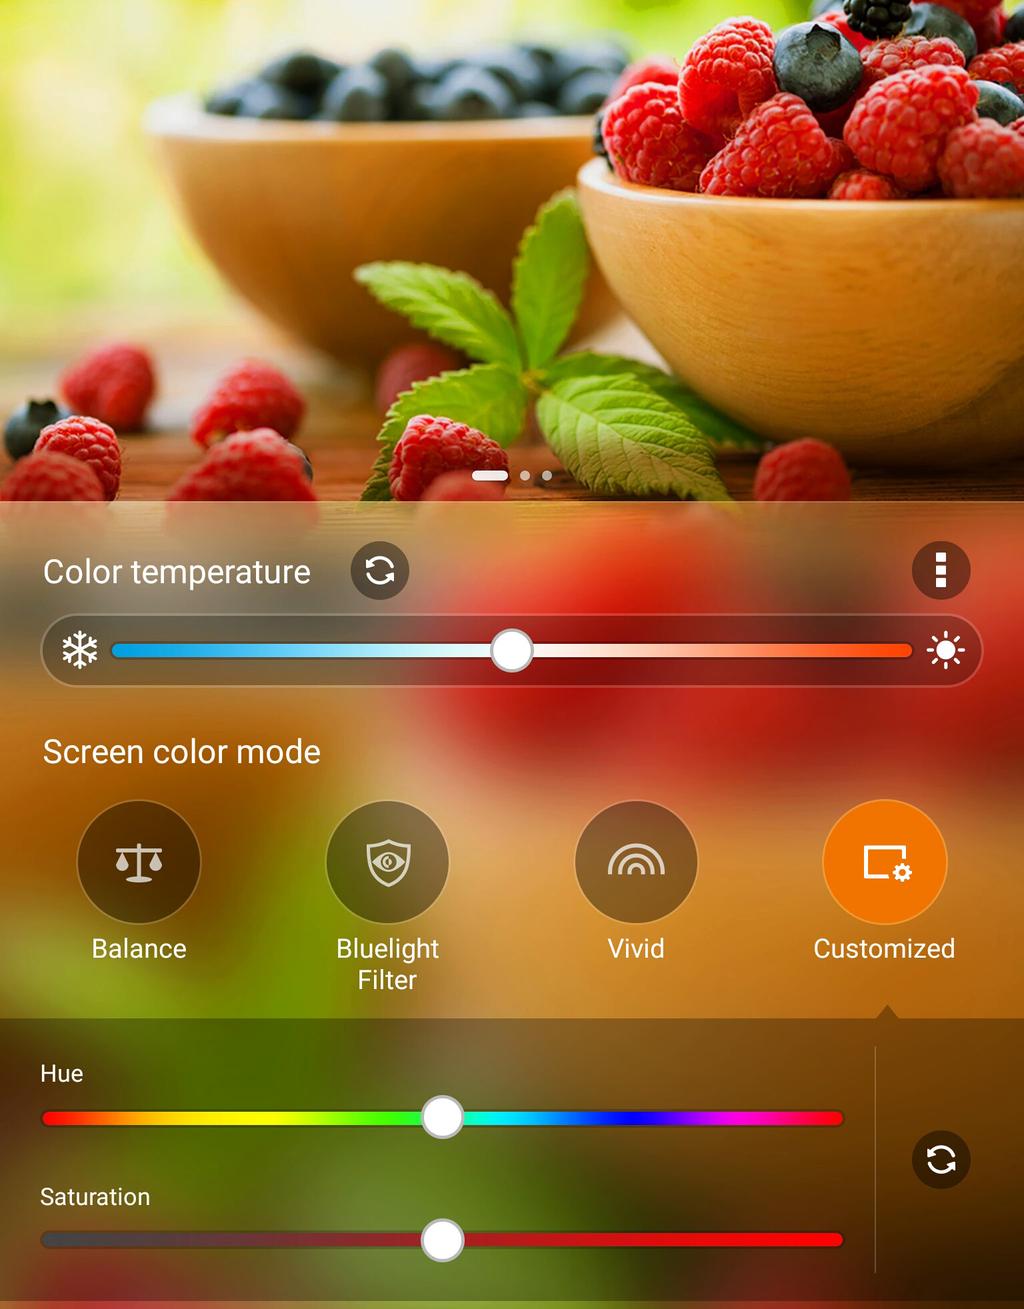 Ζωηρή λειτουργία Η λειτουργία αυτή παρέχει μια ένα προκαθορισμένο χρωματικό στοιχείο μικροσυντονισμού που εμπλουτίζει το χρώμα της οθόνης του ASUS Tablet σας.